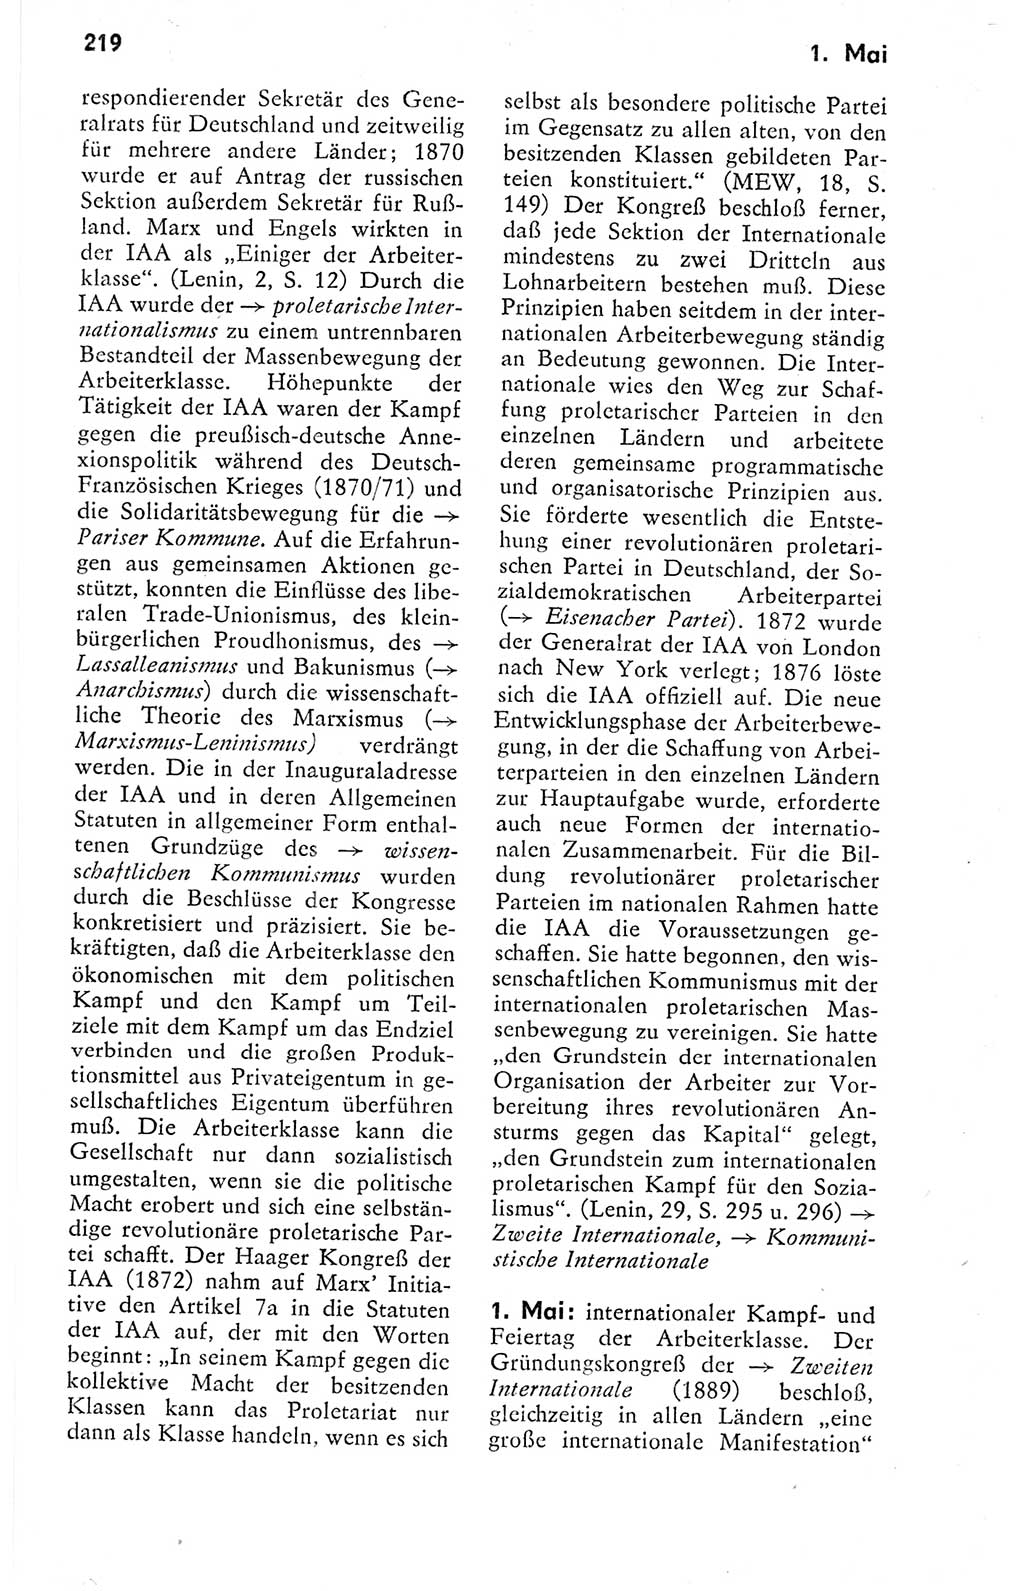 Kleines politisches Wörterbuch [Deutsche Demokratische Republik (DDR)] 1978, Seite 219 (Kl. pol. Wb. DDR 1978, S. 219)